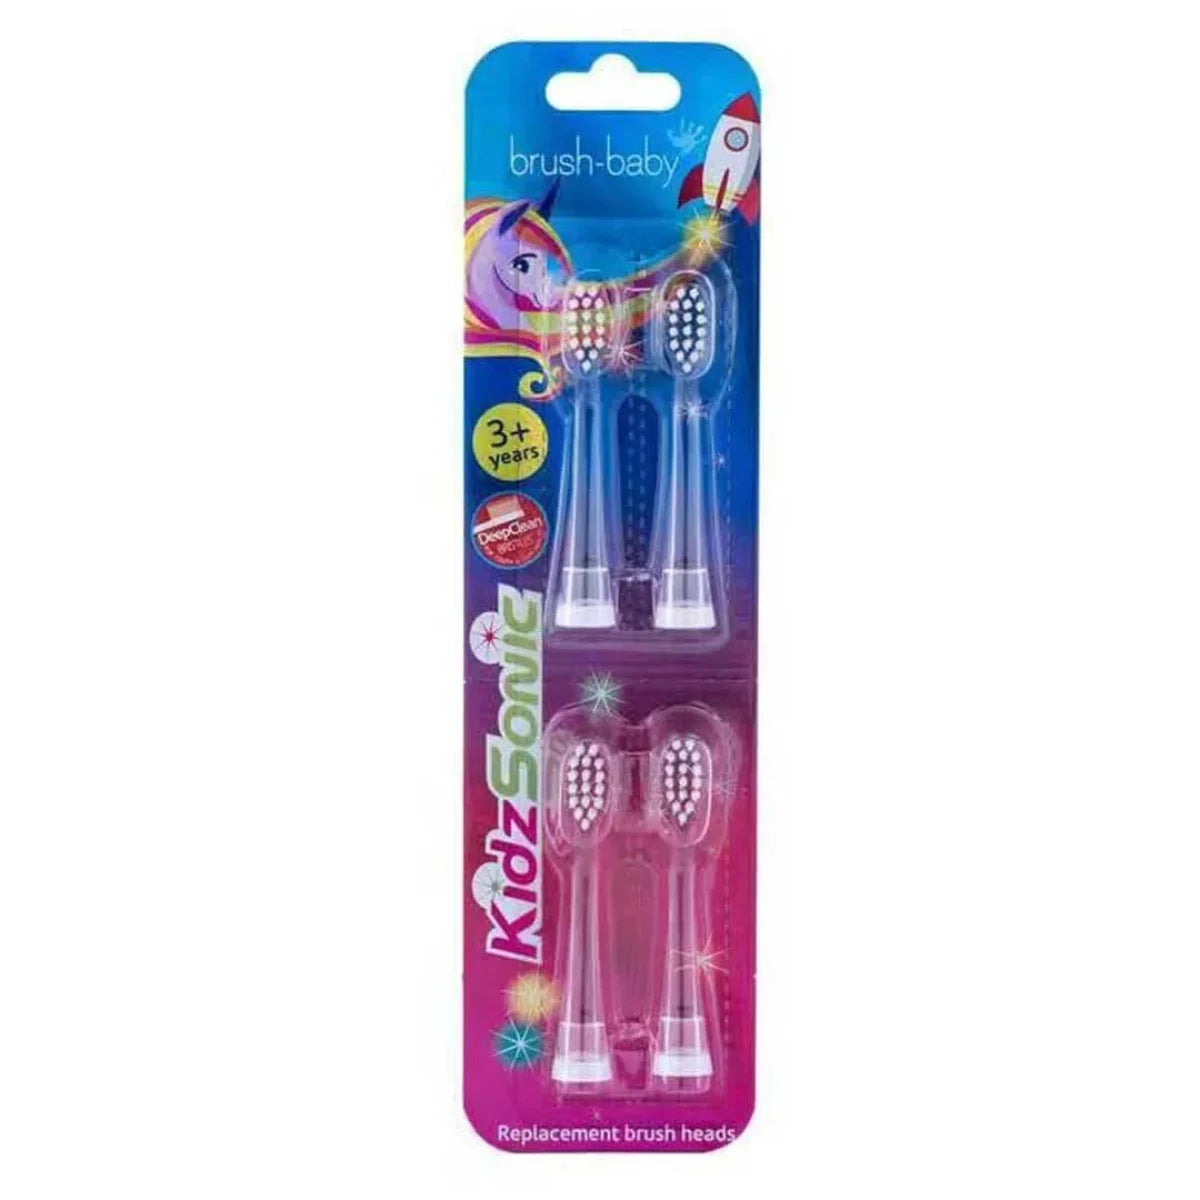 4 pack of kidzsonic kids electric toothbrush replacement brush heads